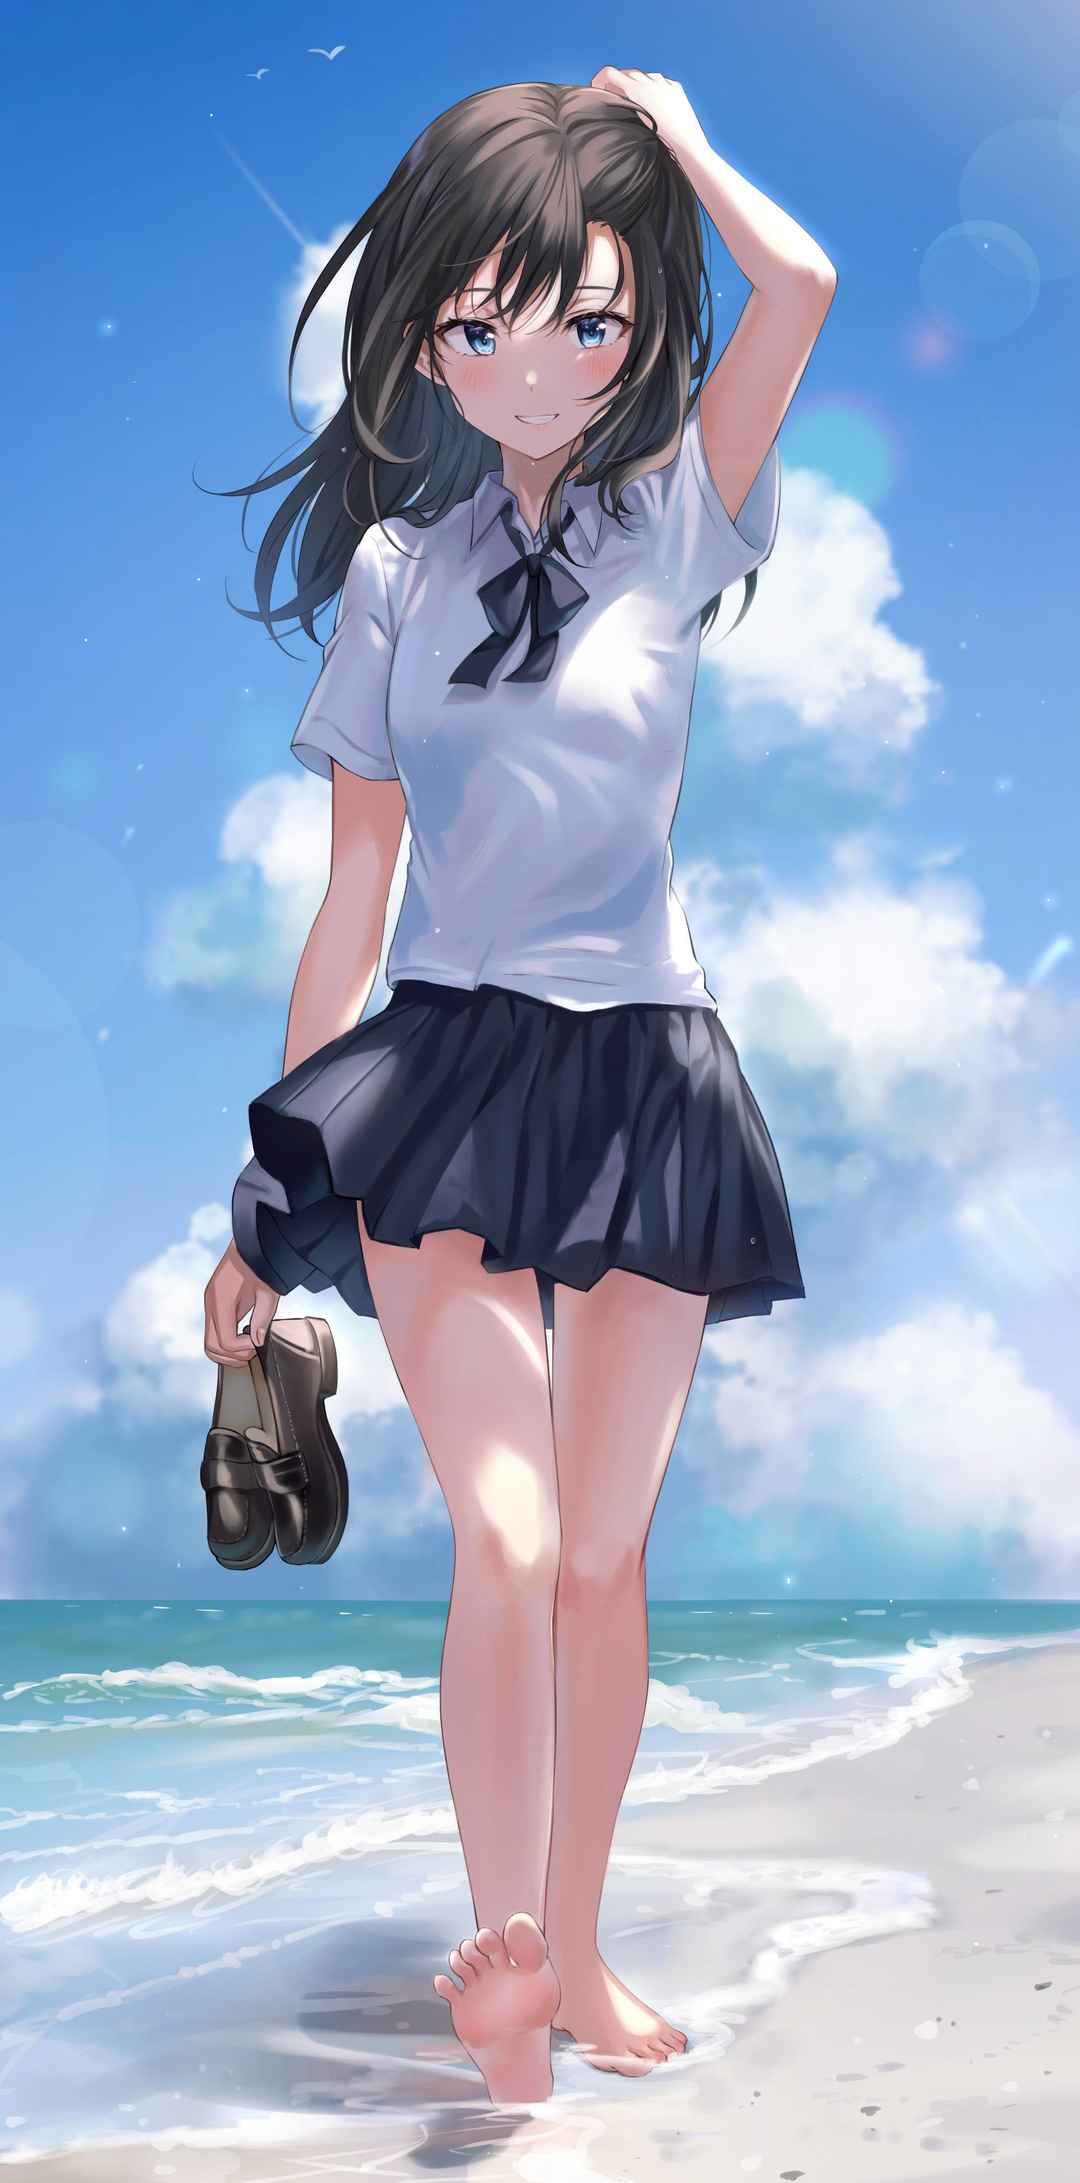 提着拖鞋右手拿烟火沙滩踏浪的日本动漫少女电脑壁纸